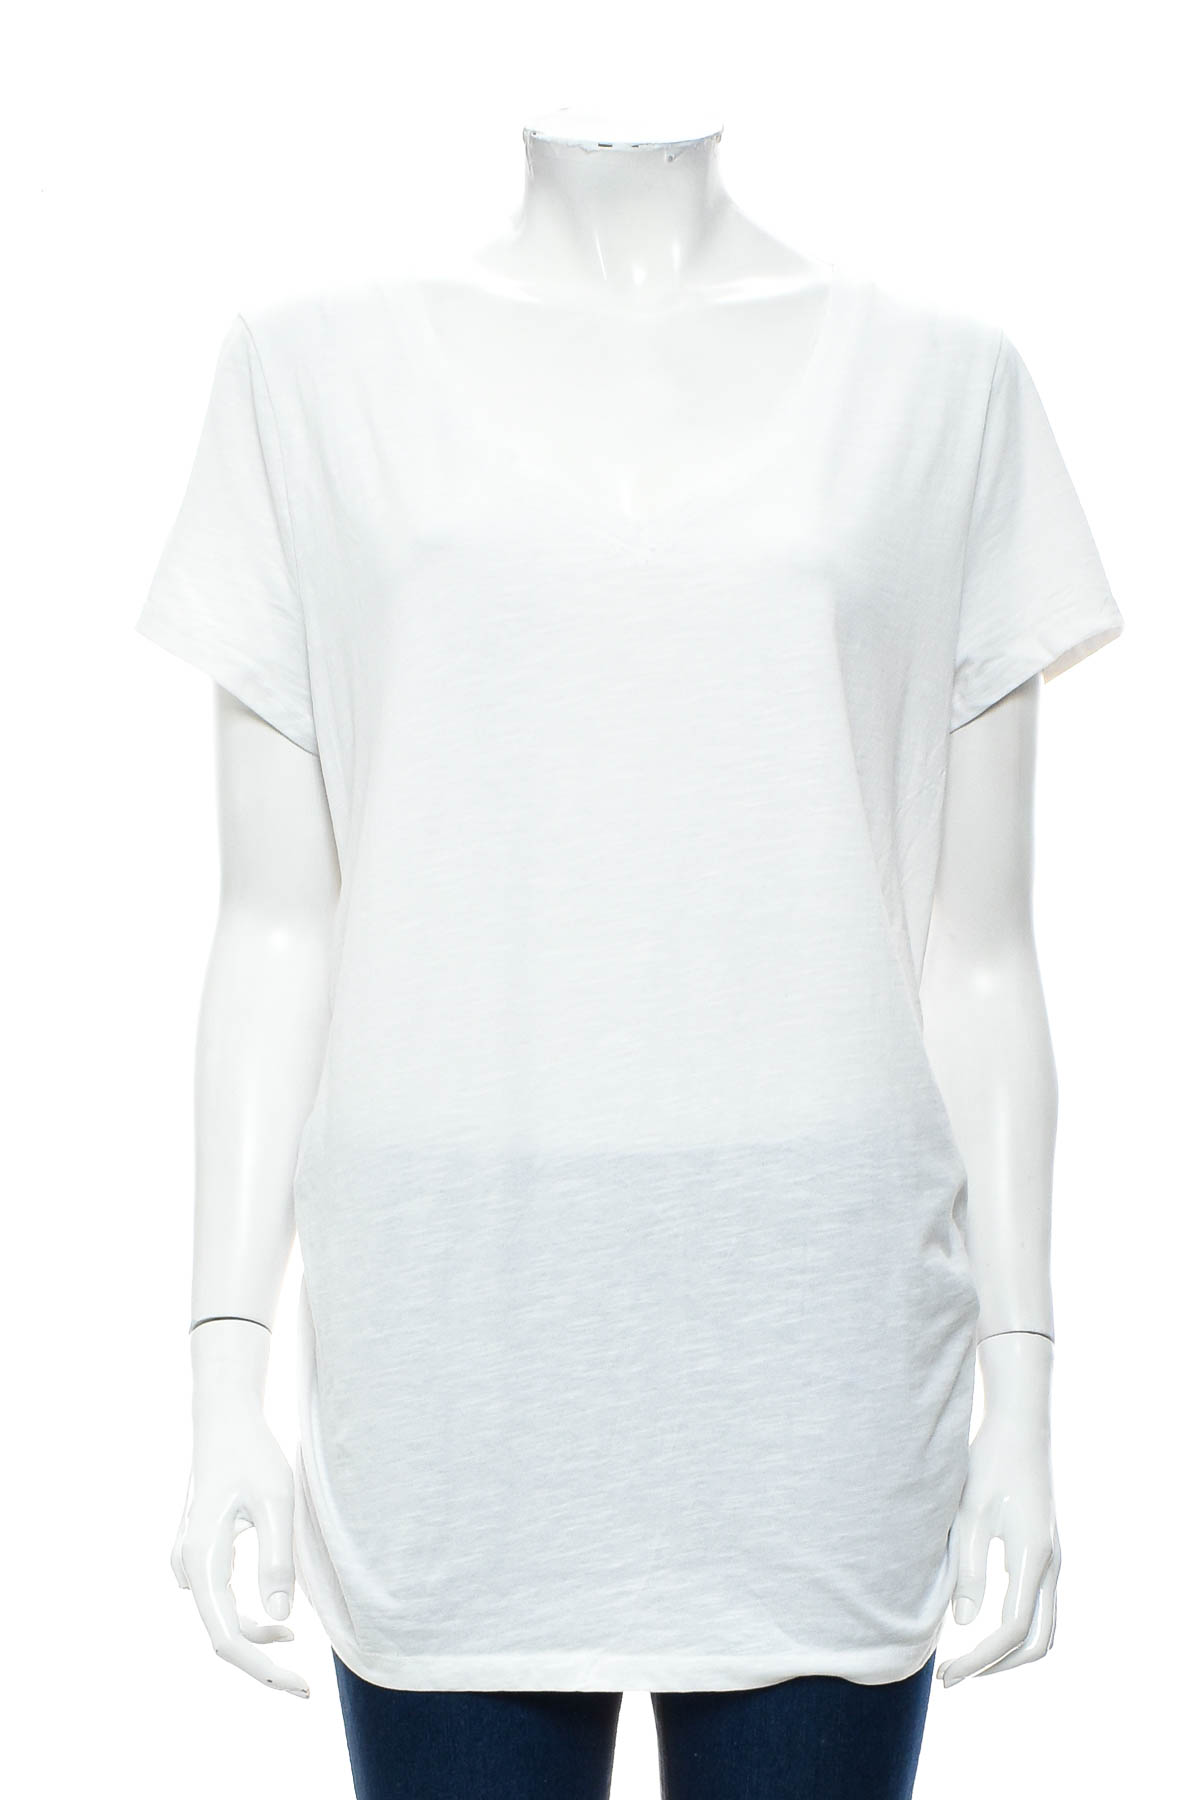 Γυναικεία μπλούζα για έγκυες - Sonoma - 0